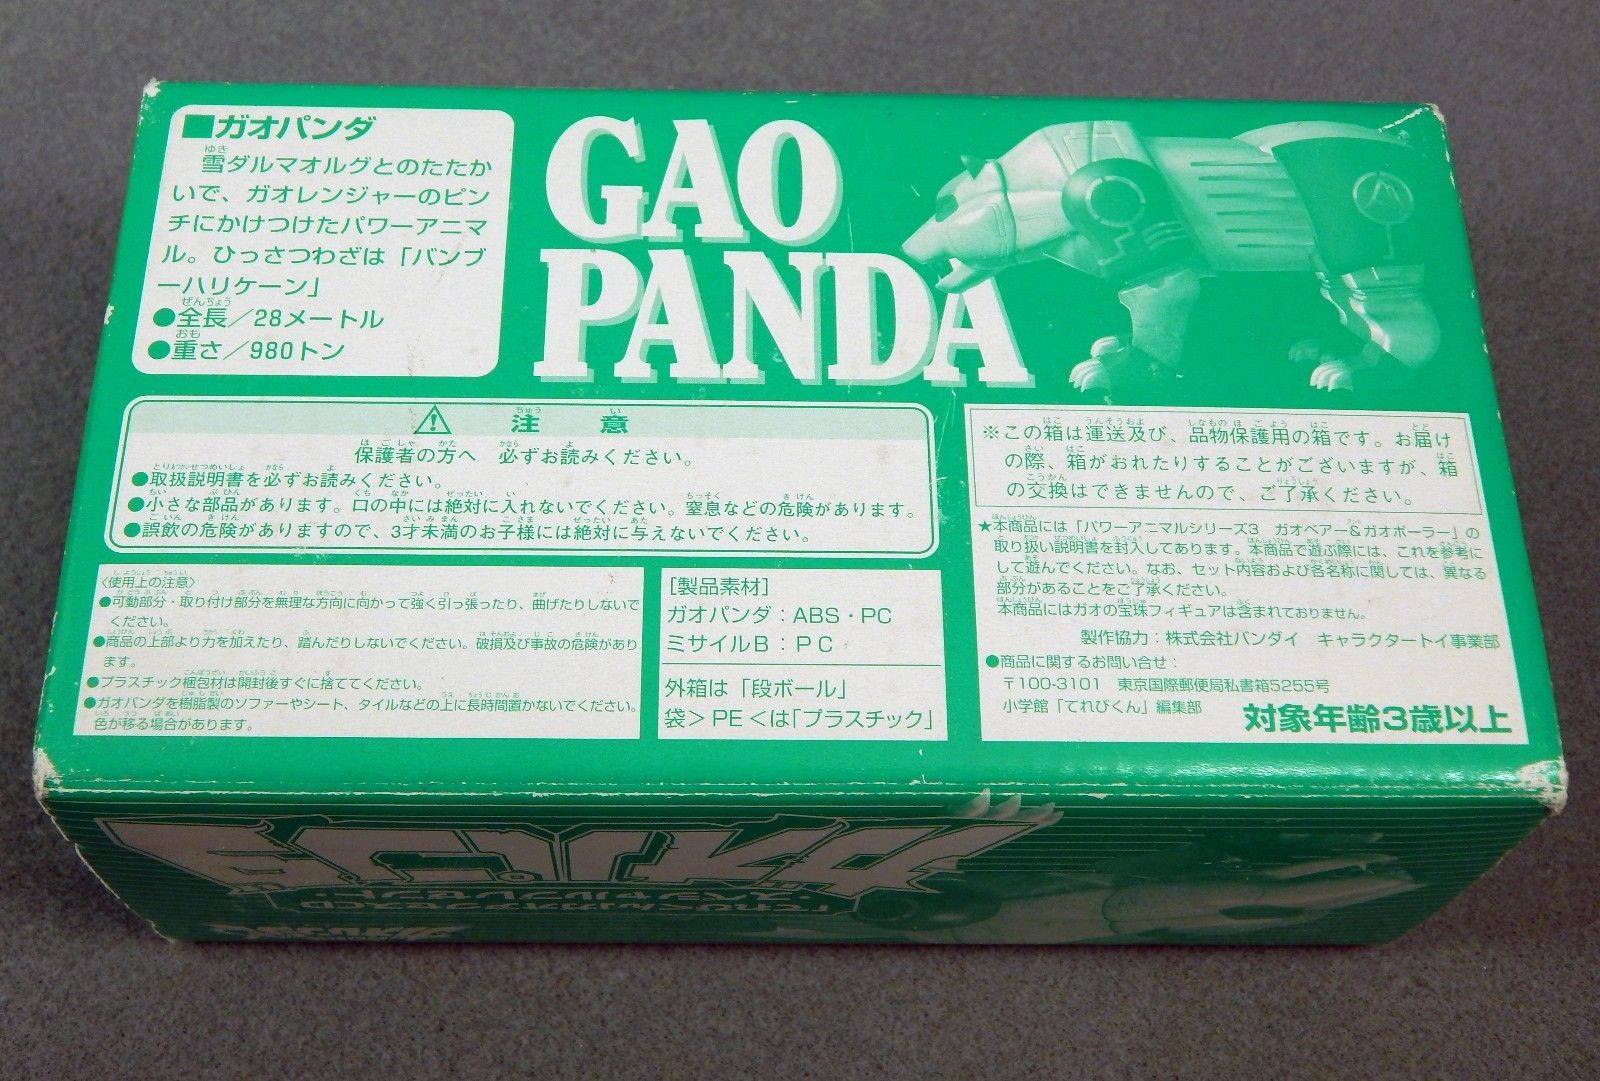 Tổng hợp 61 hình về mô hình gao panda  NEC